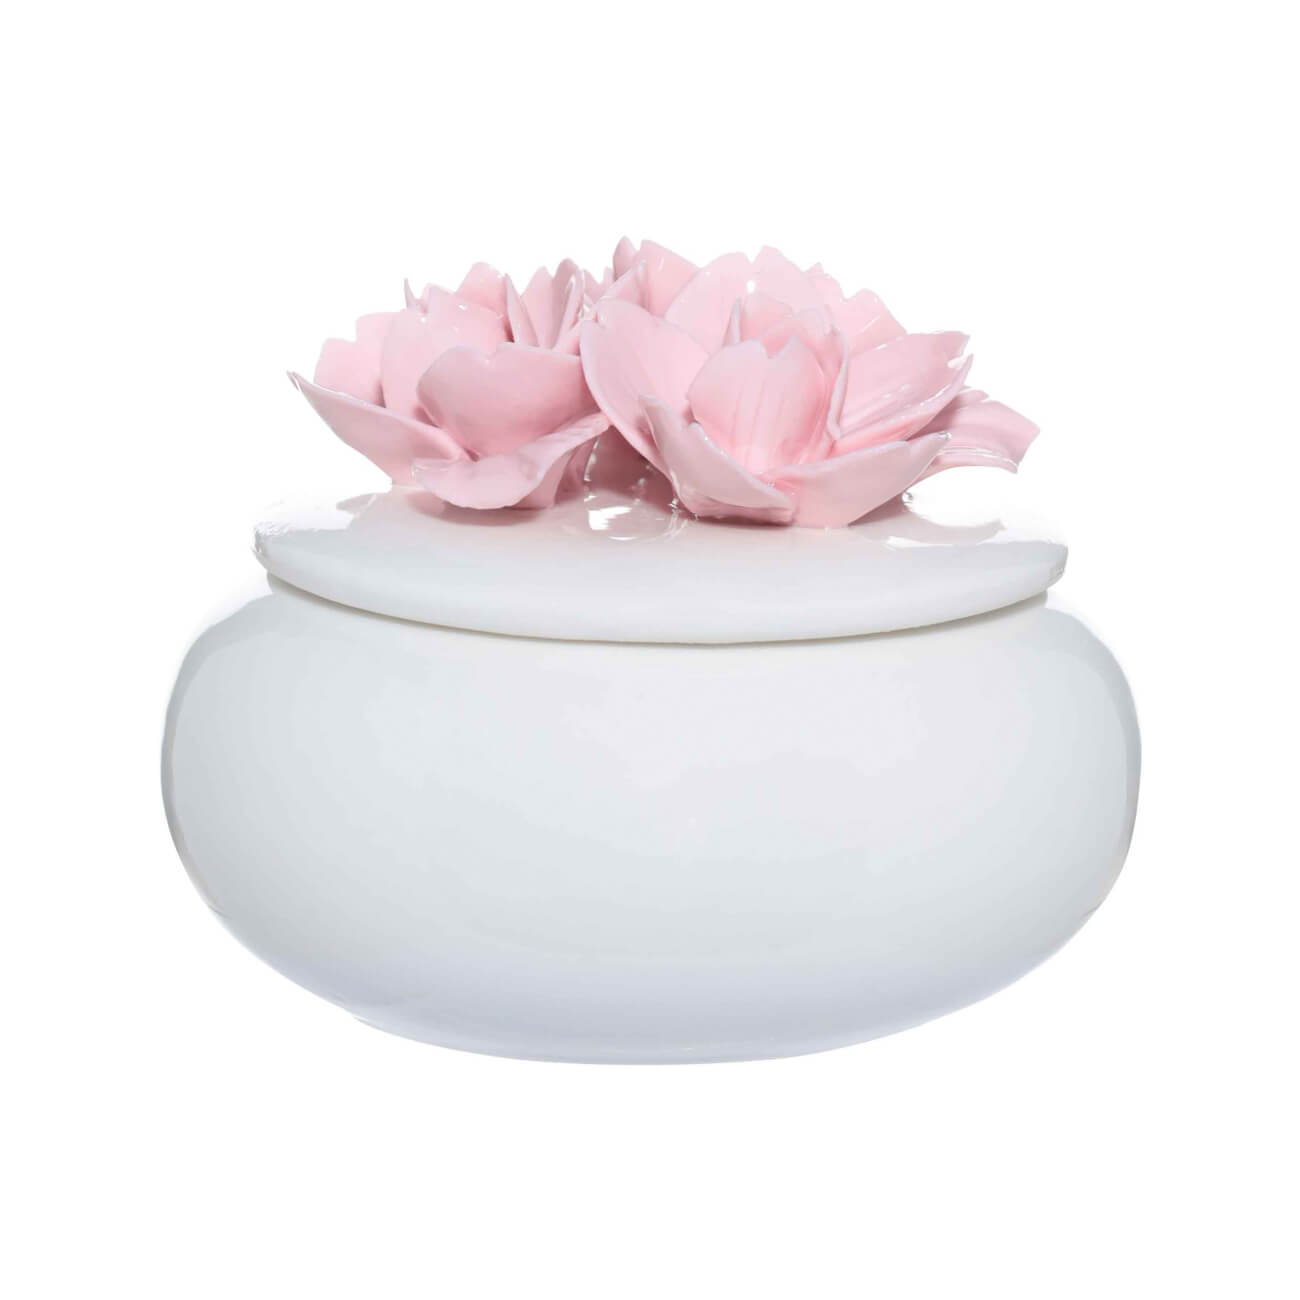 Шкатулка для украшений, 11х9 см, керамика, белая, Цветы, Magnolia изображение № 1